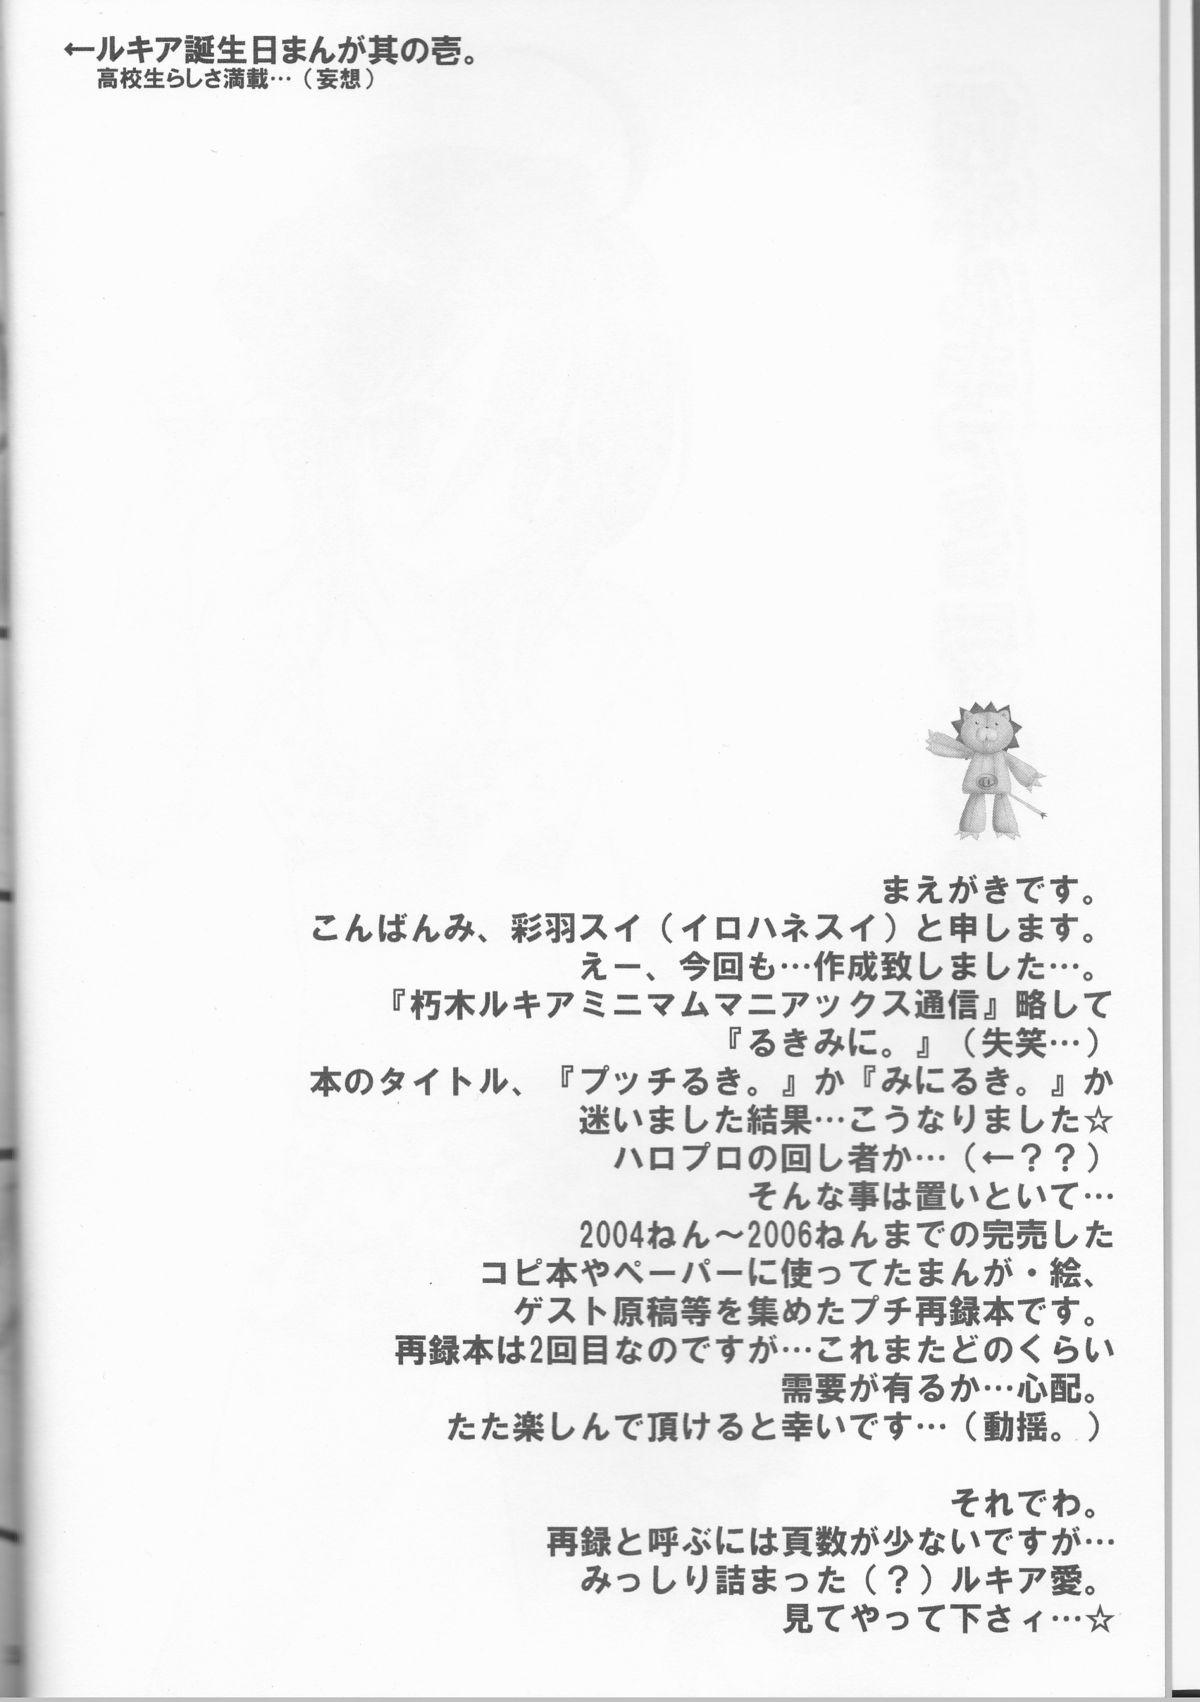 Jizz Rukia Kuchiki Minimum Maniax File - Bleach Hot Fuck - Page 4